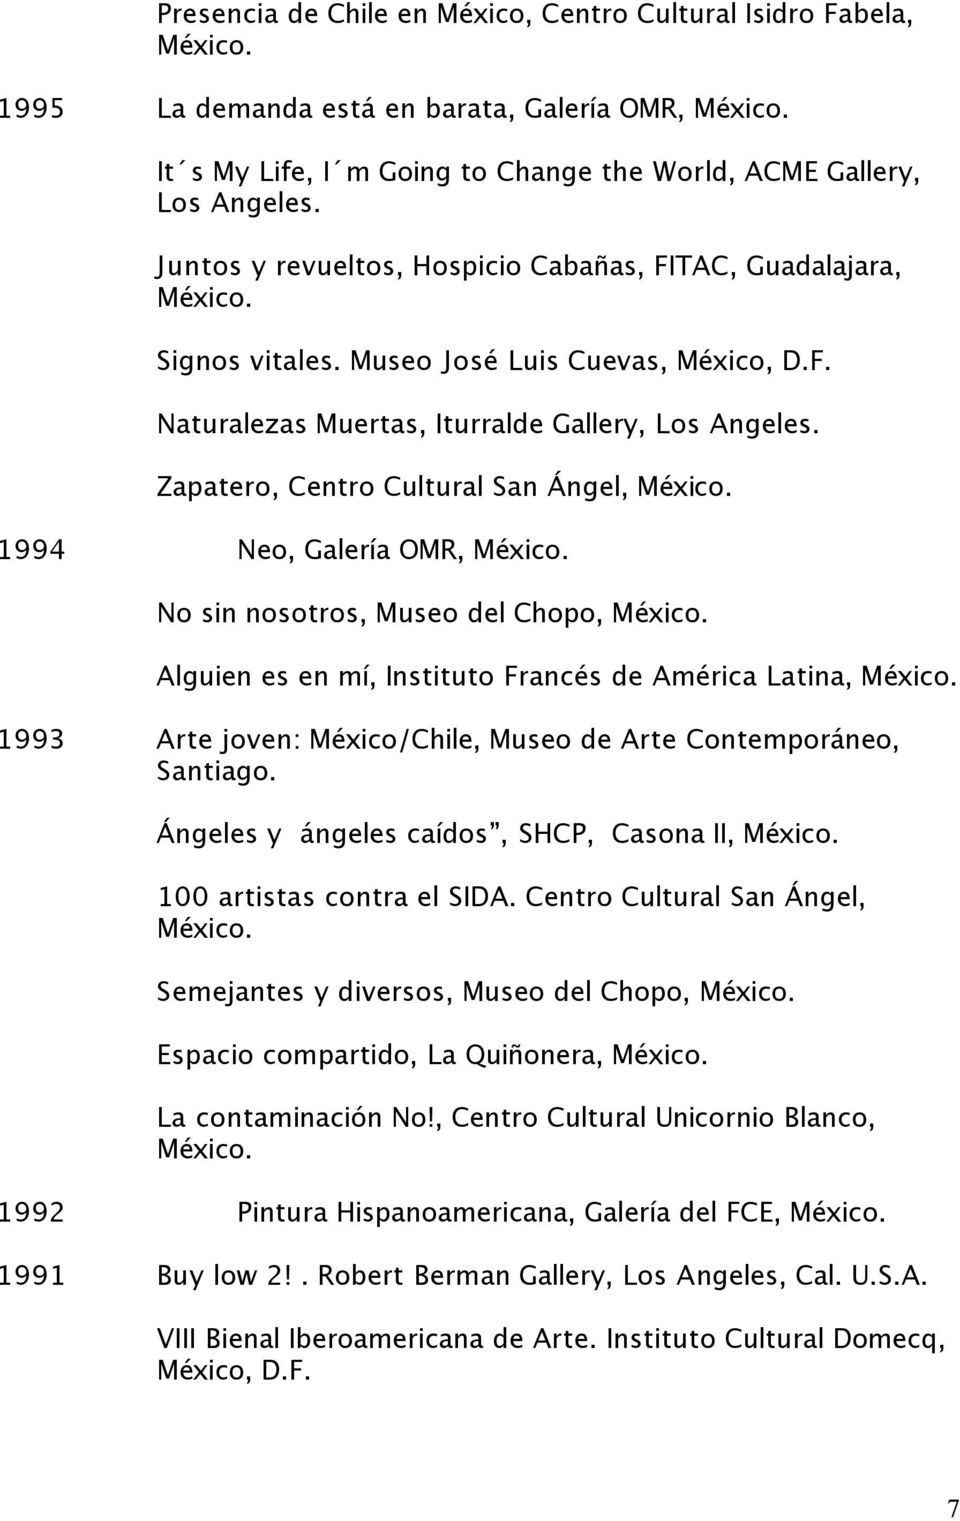 Zapatero, Centro Cultural San Ángel, 1994 Neo, Galería OMR, No sin nosotros, Museo del Chopo, Alguien es en mí, Instituto Francés de América Latina, 1993 Arte joven: México/Chile, Museo de Arte